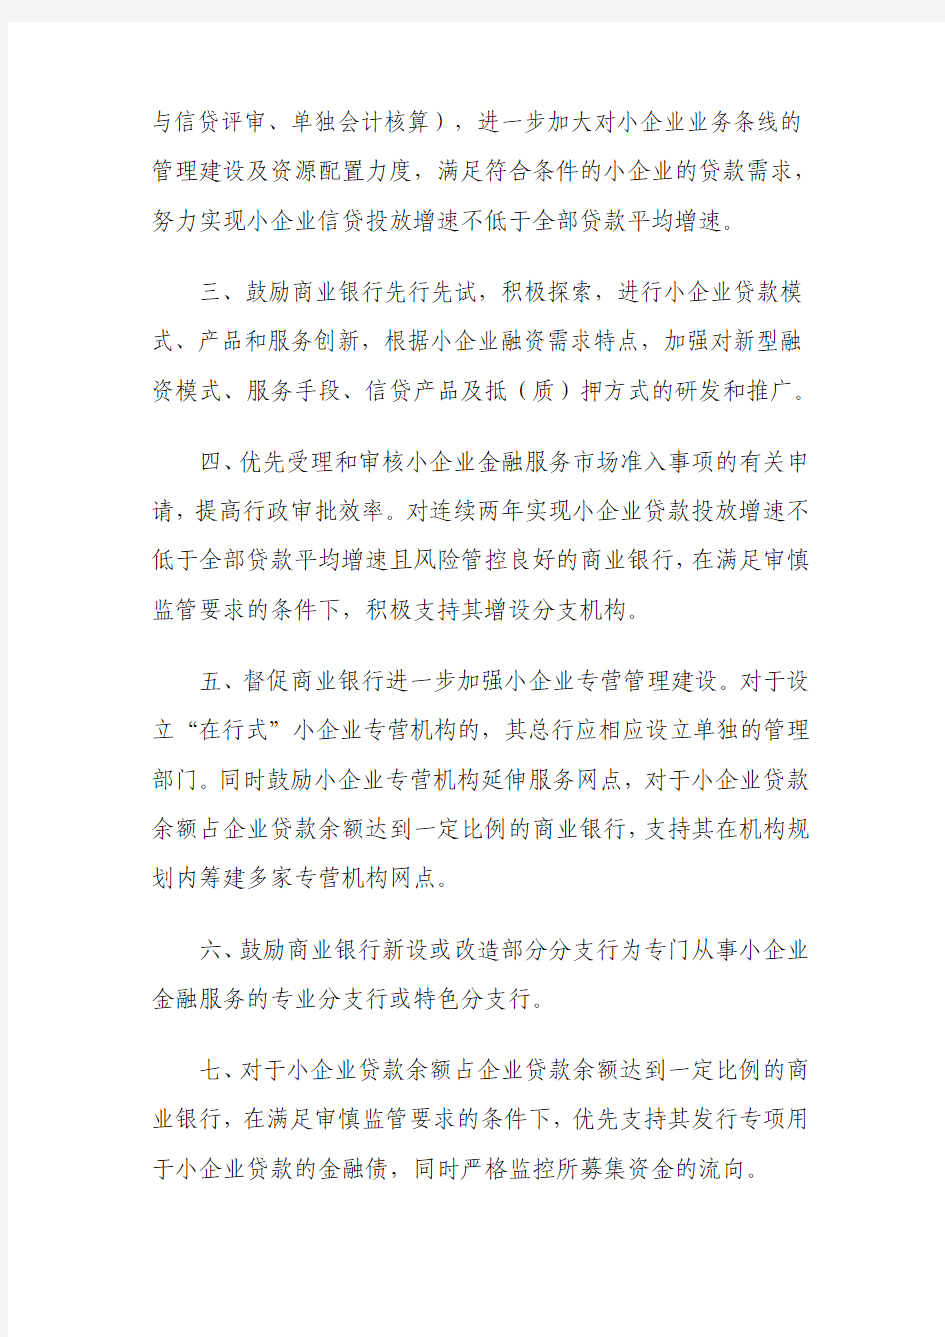 中国银监会关于支持商业银行进一步改进小企业金融服务的通知-(银监发〔2011〕59号